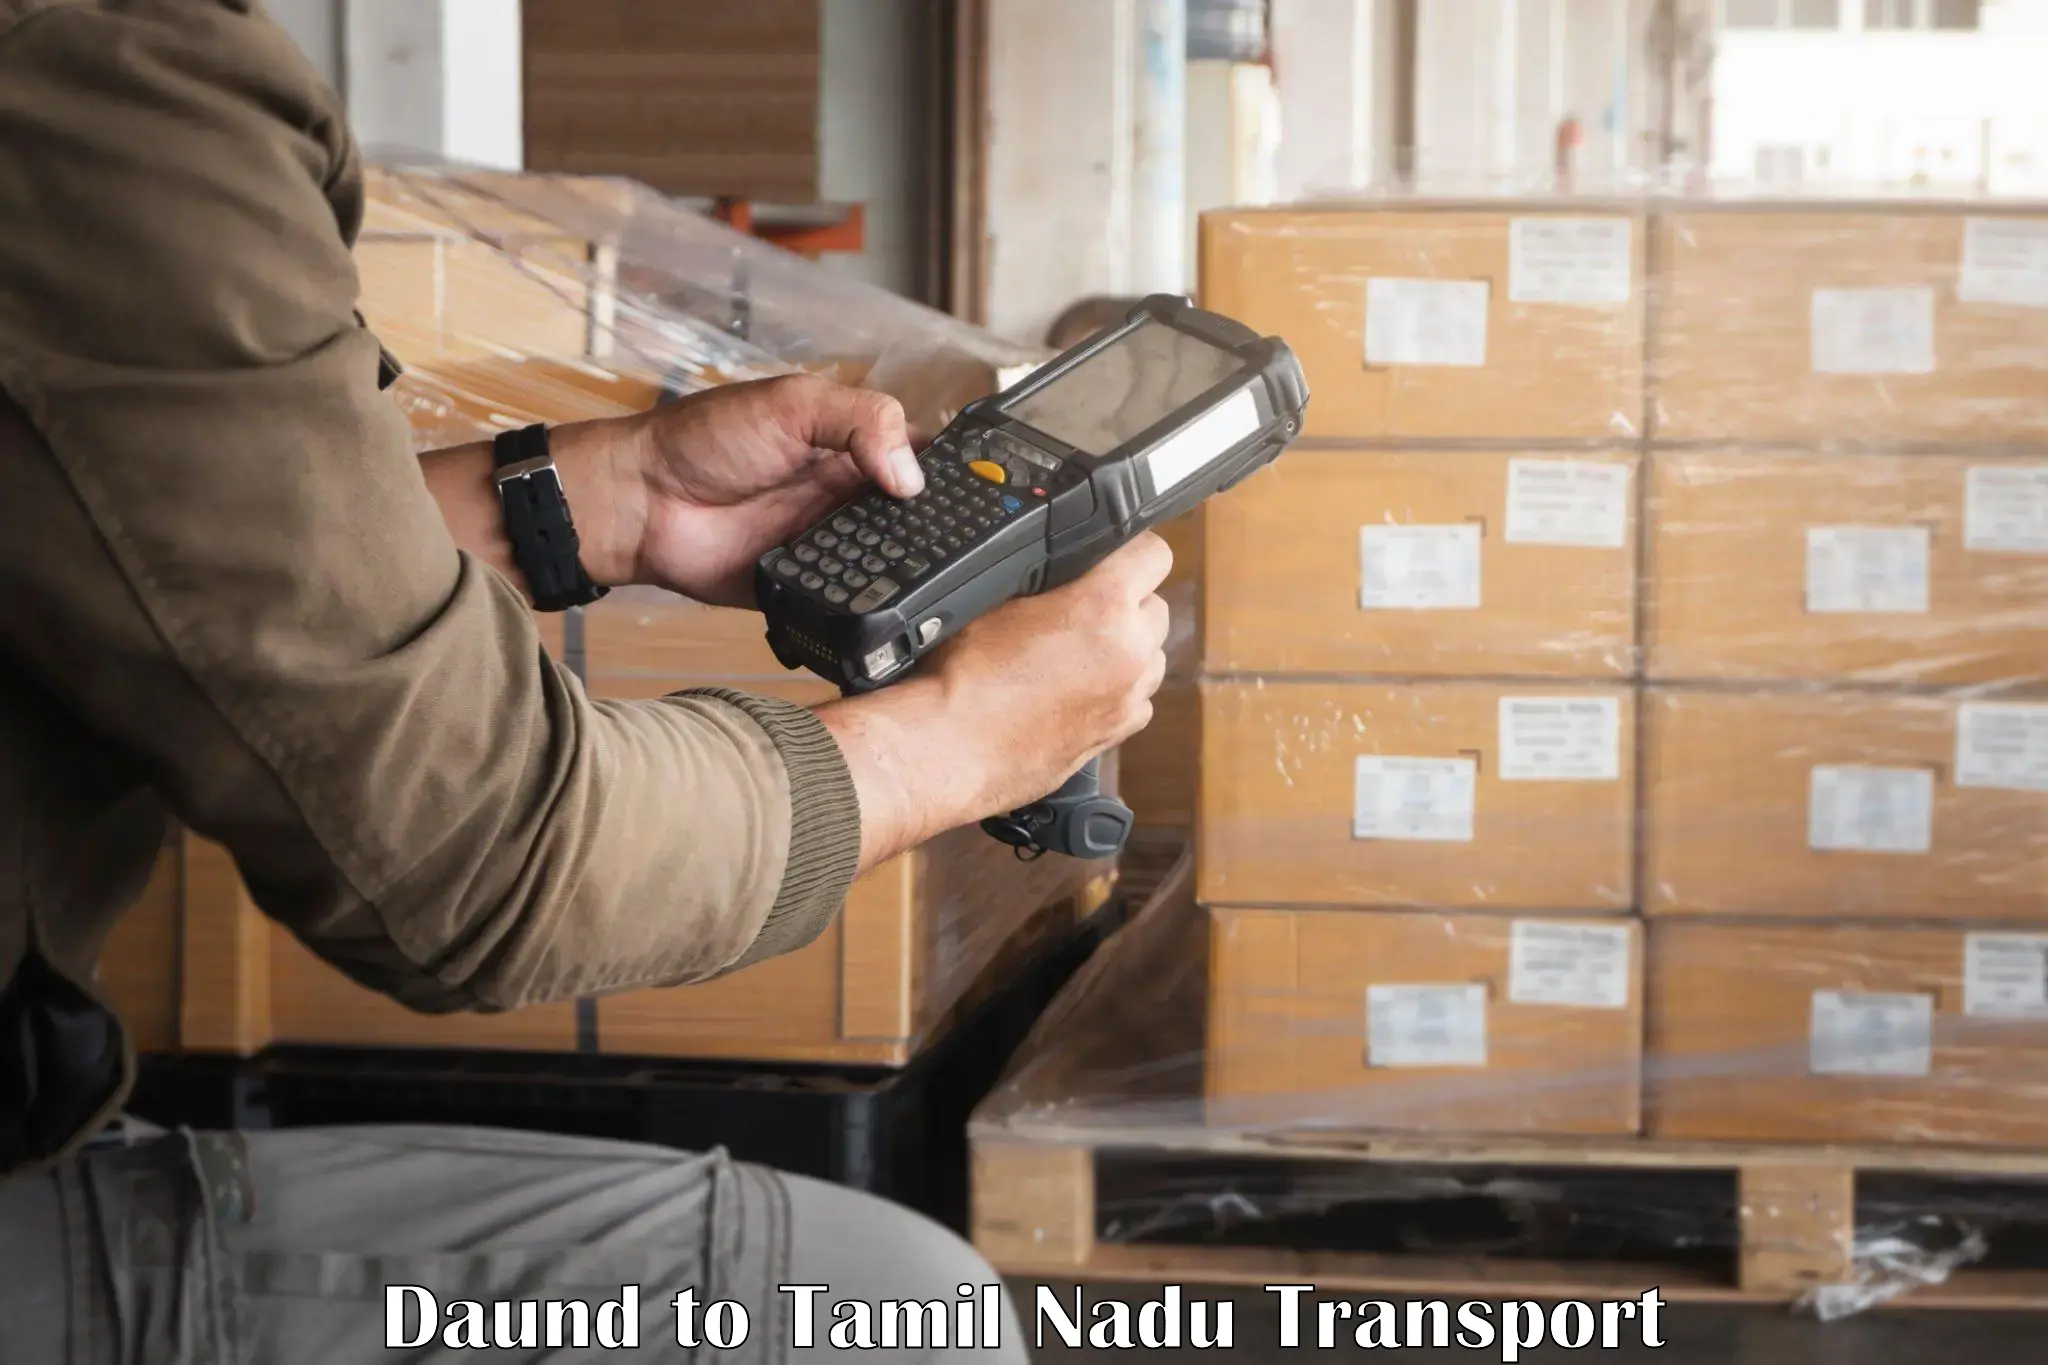 Two wheeler parcel service Daund to Tamil Nadu